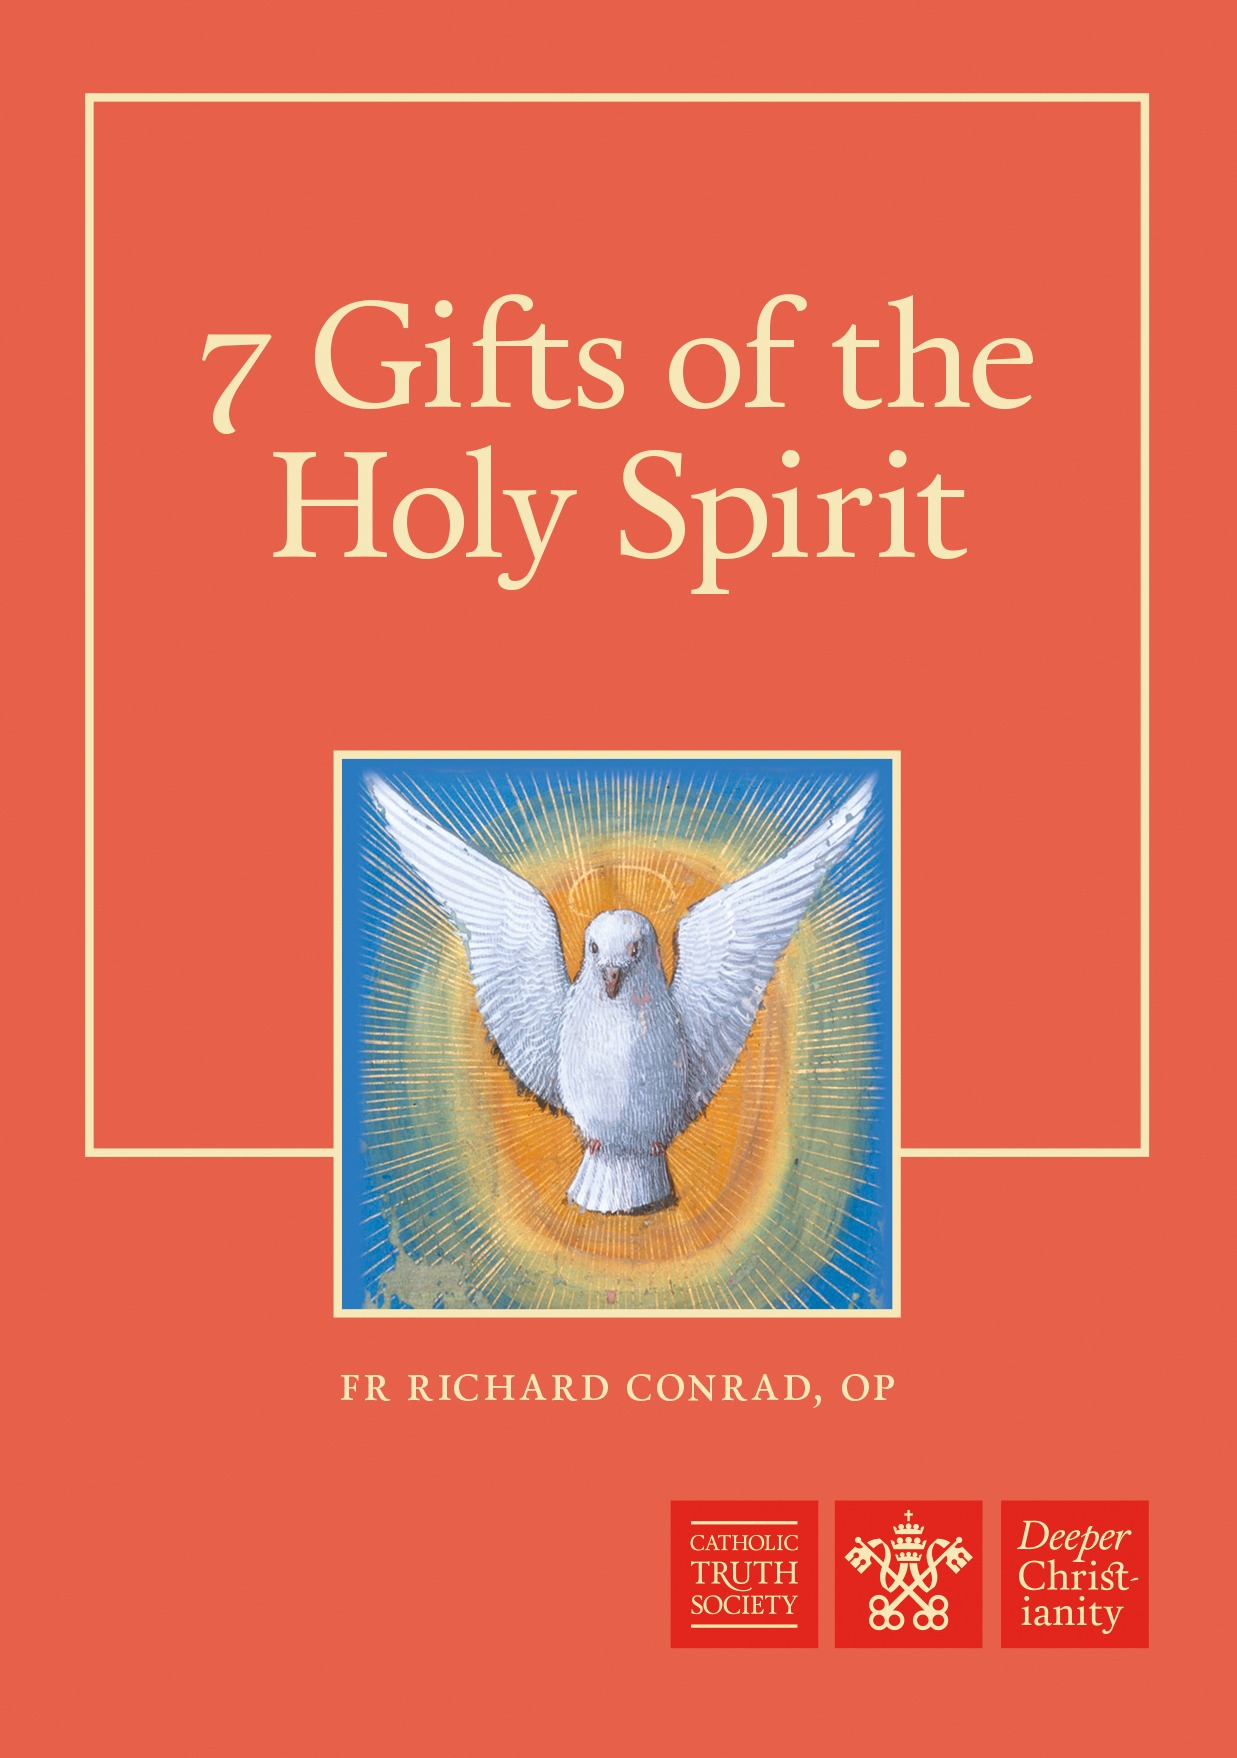 7-gifts-of-the-holy-spirit-catholic